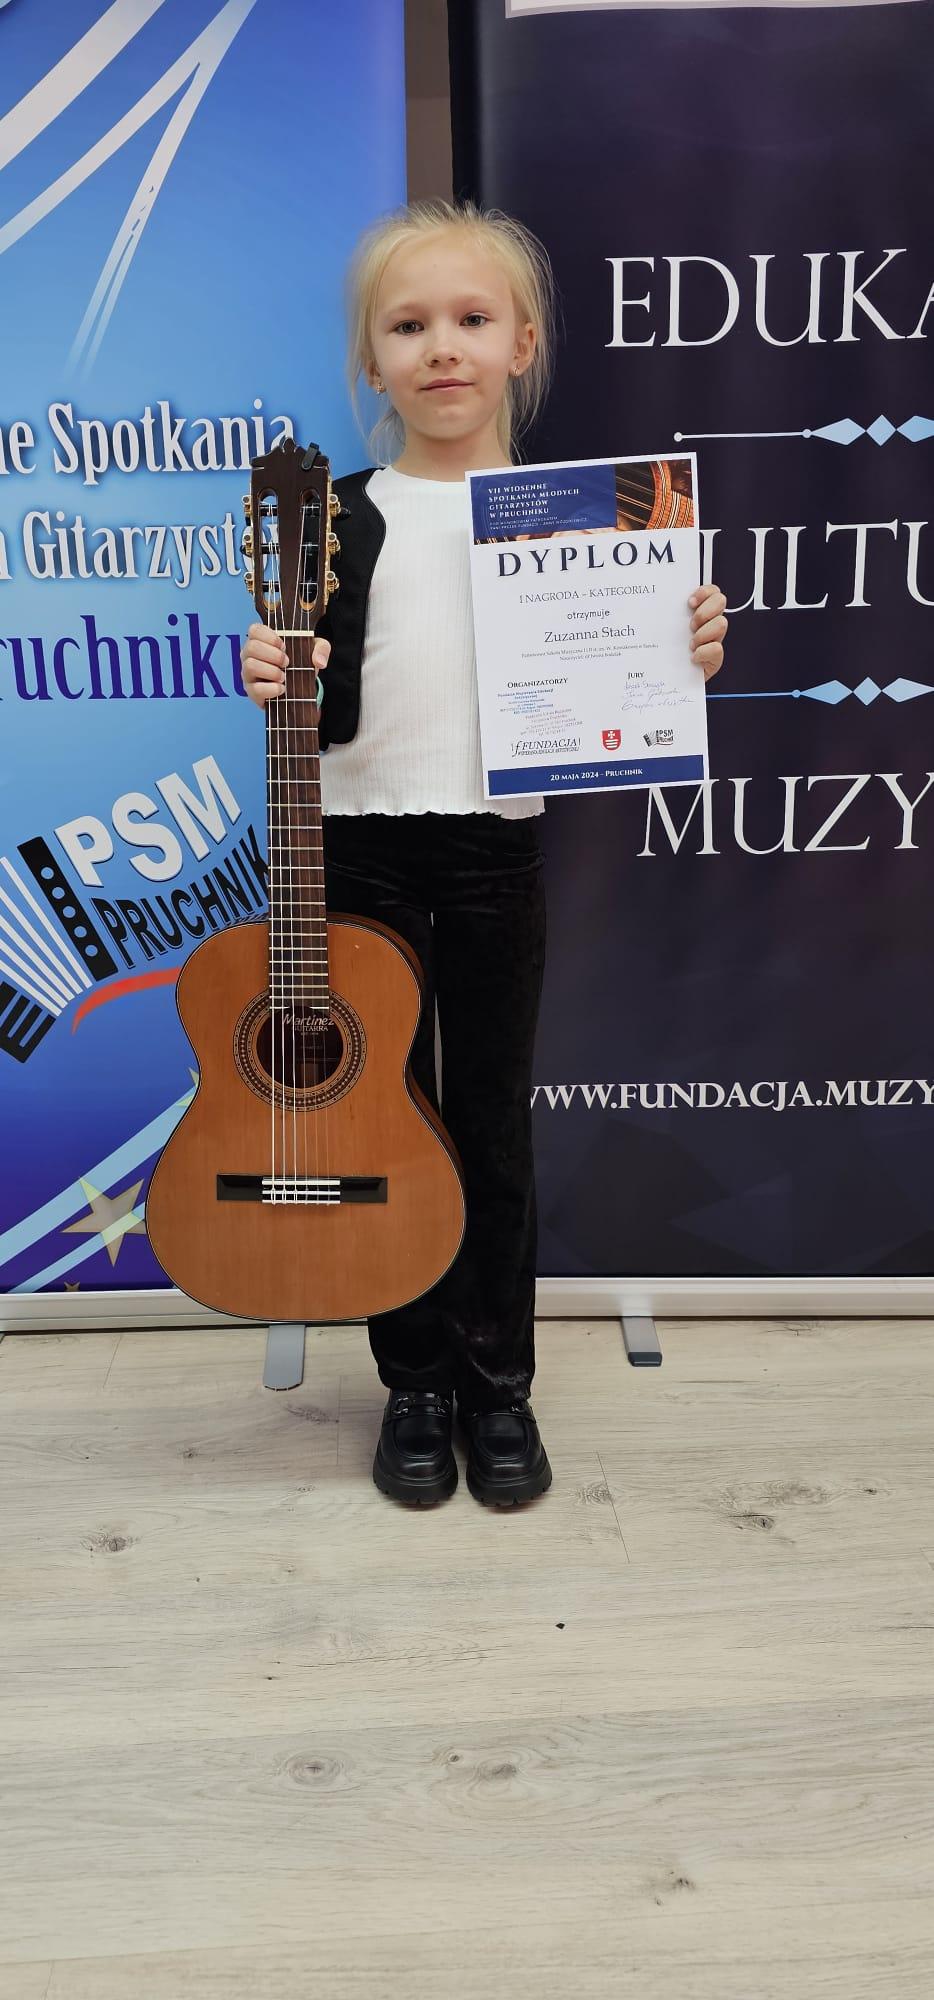 Zuzanna Stach - VII Wiosenne Spotkania Młodych Gitarzystów w Pruchniku. Uczennica z gitarą i dyplomem, w tle reklama konkursu.